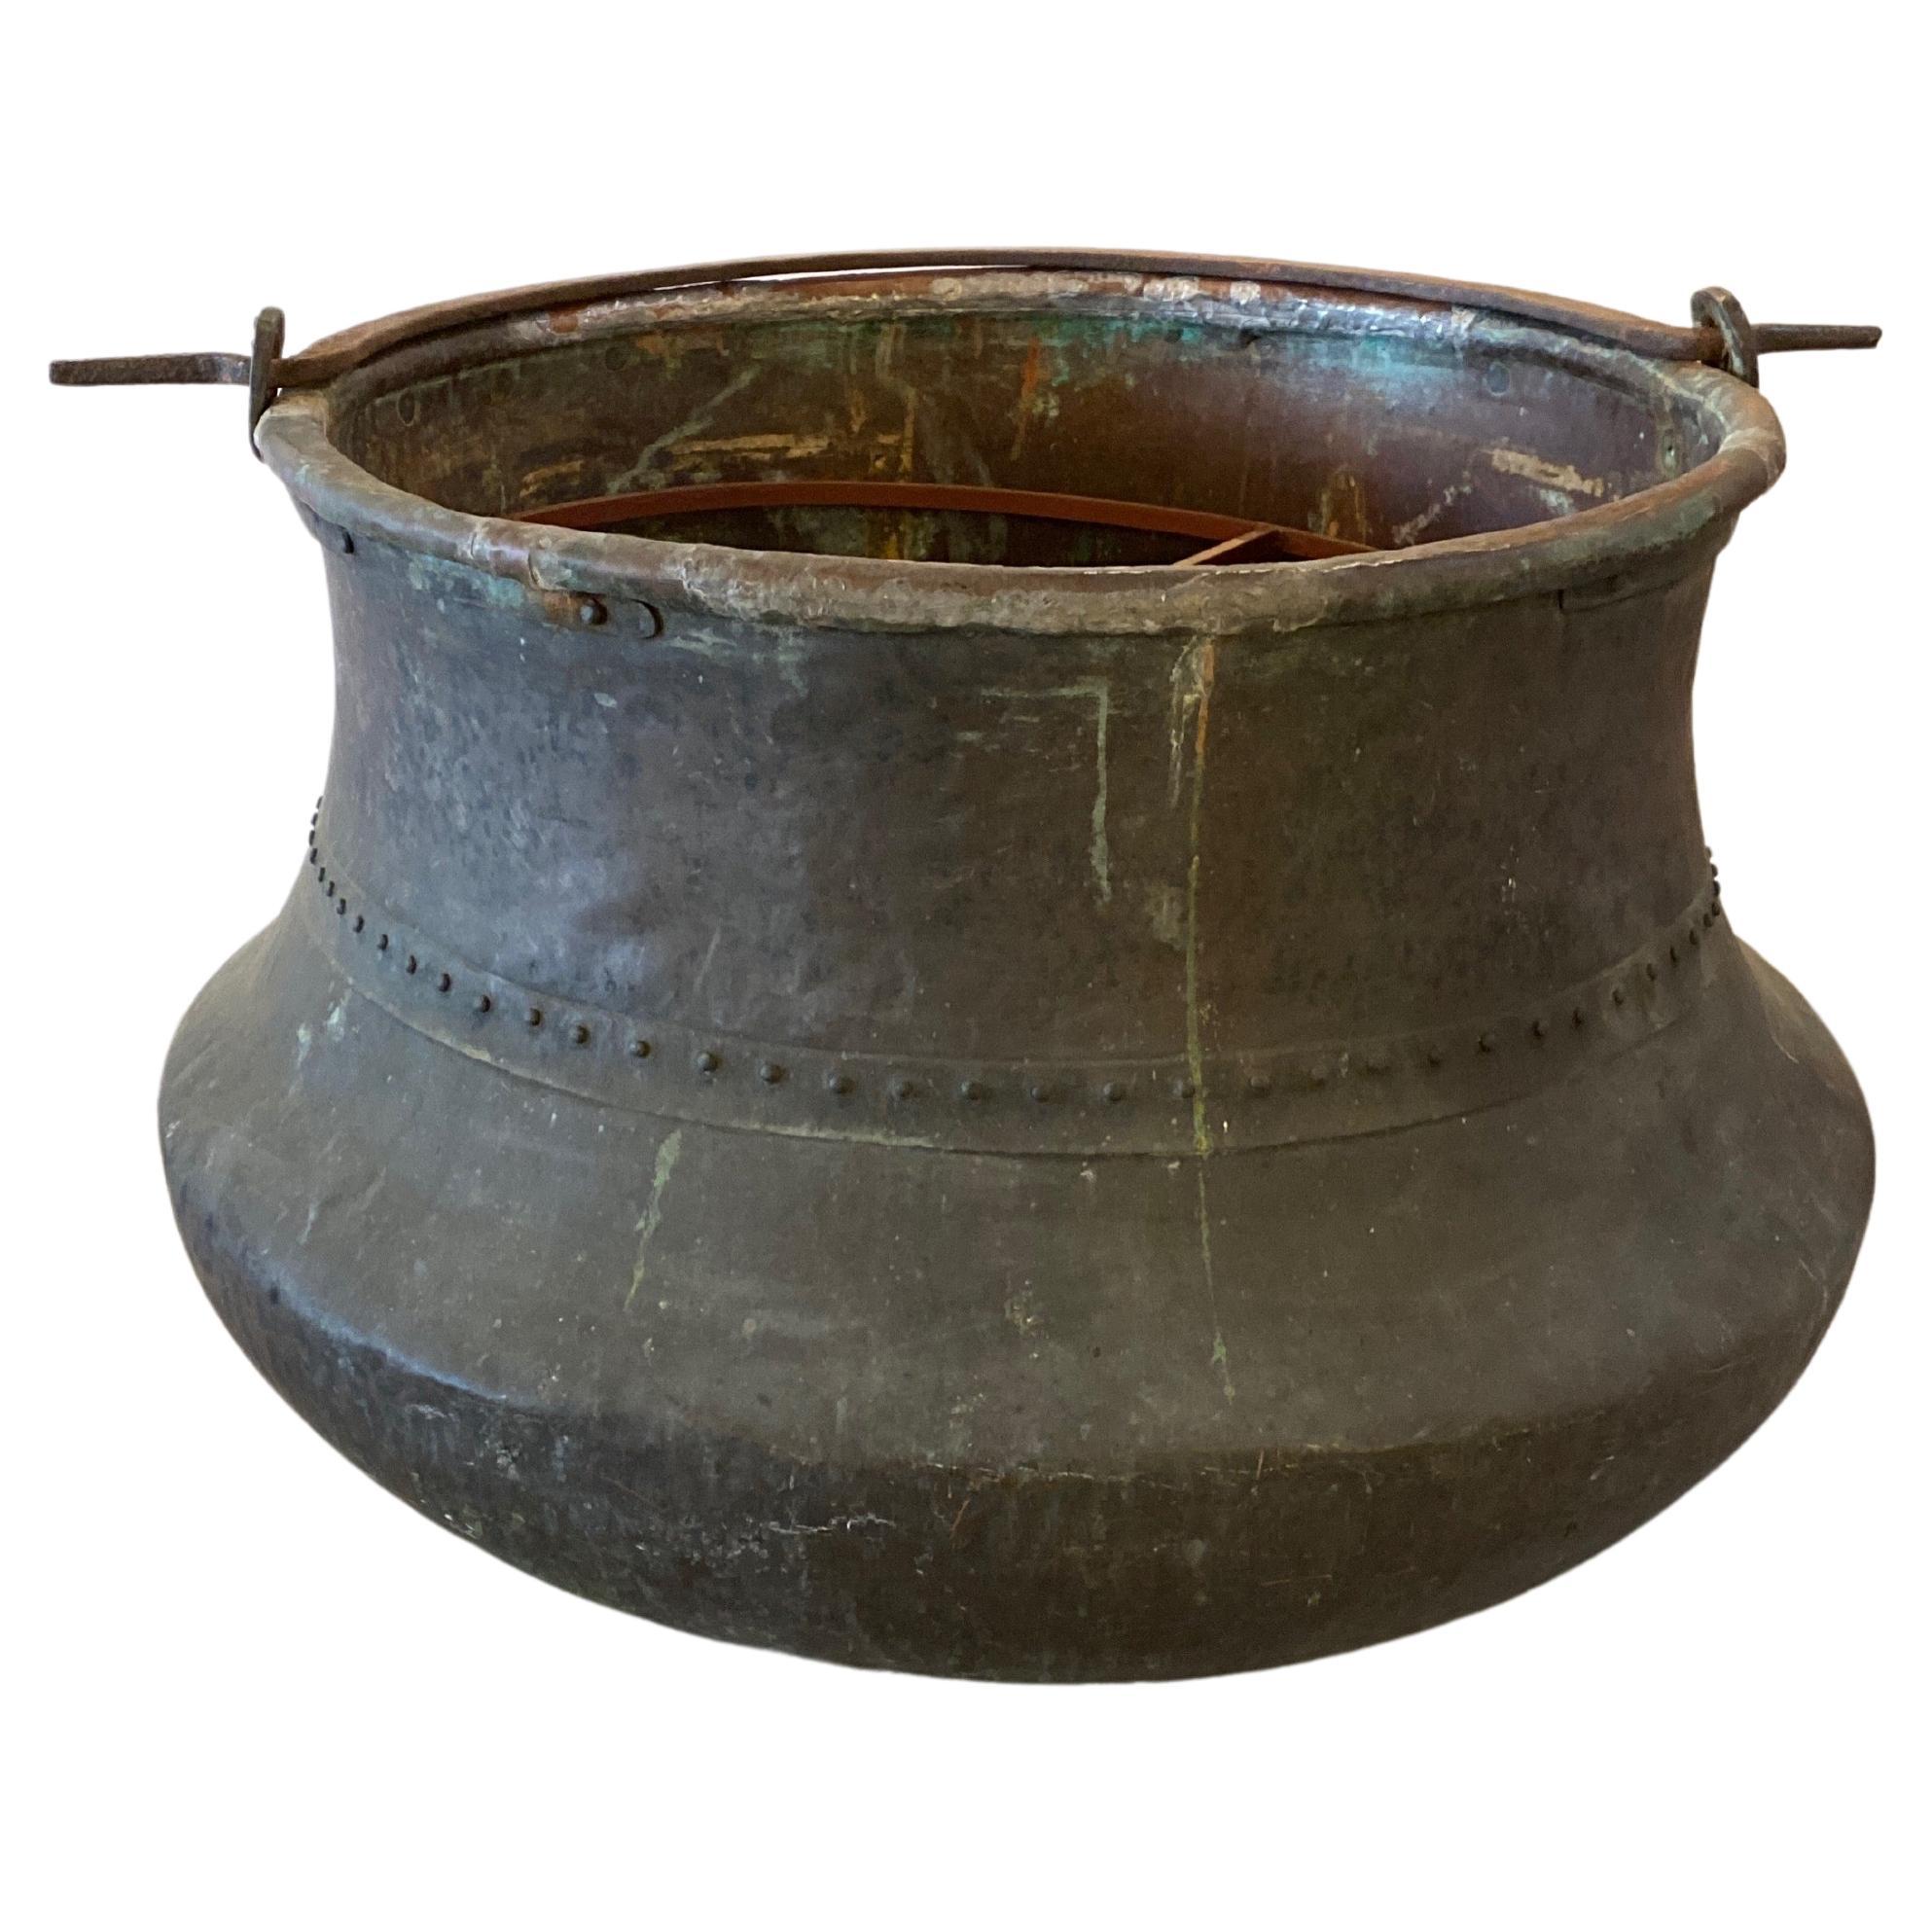 Massive Copper Cauldron Pot Planter Dated 1836